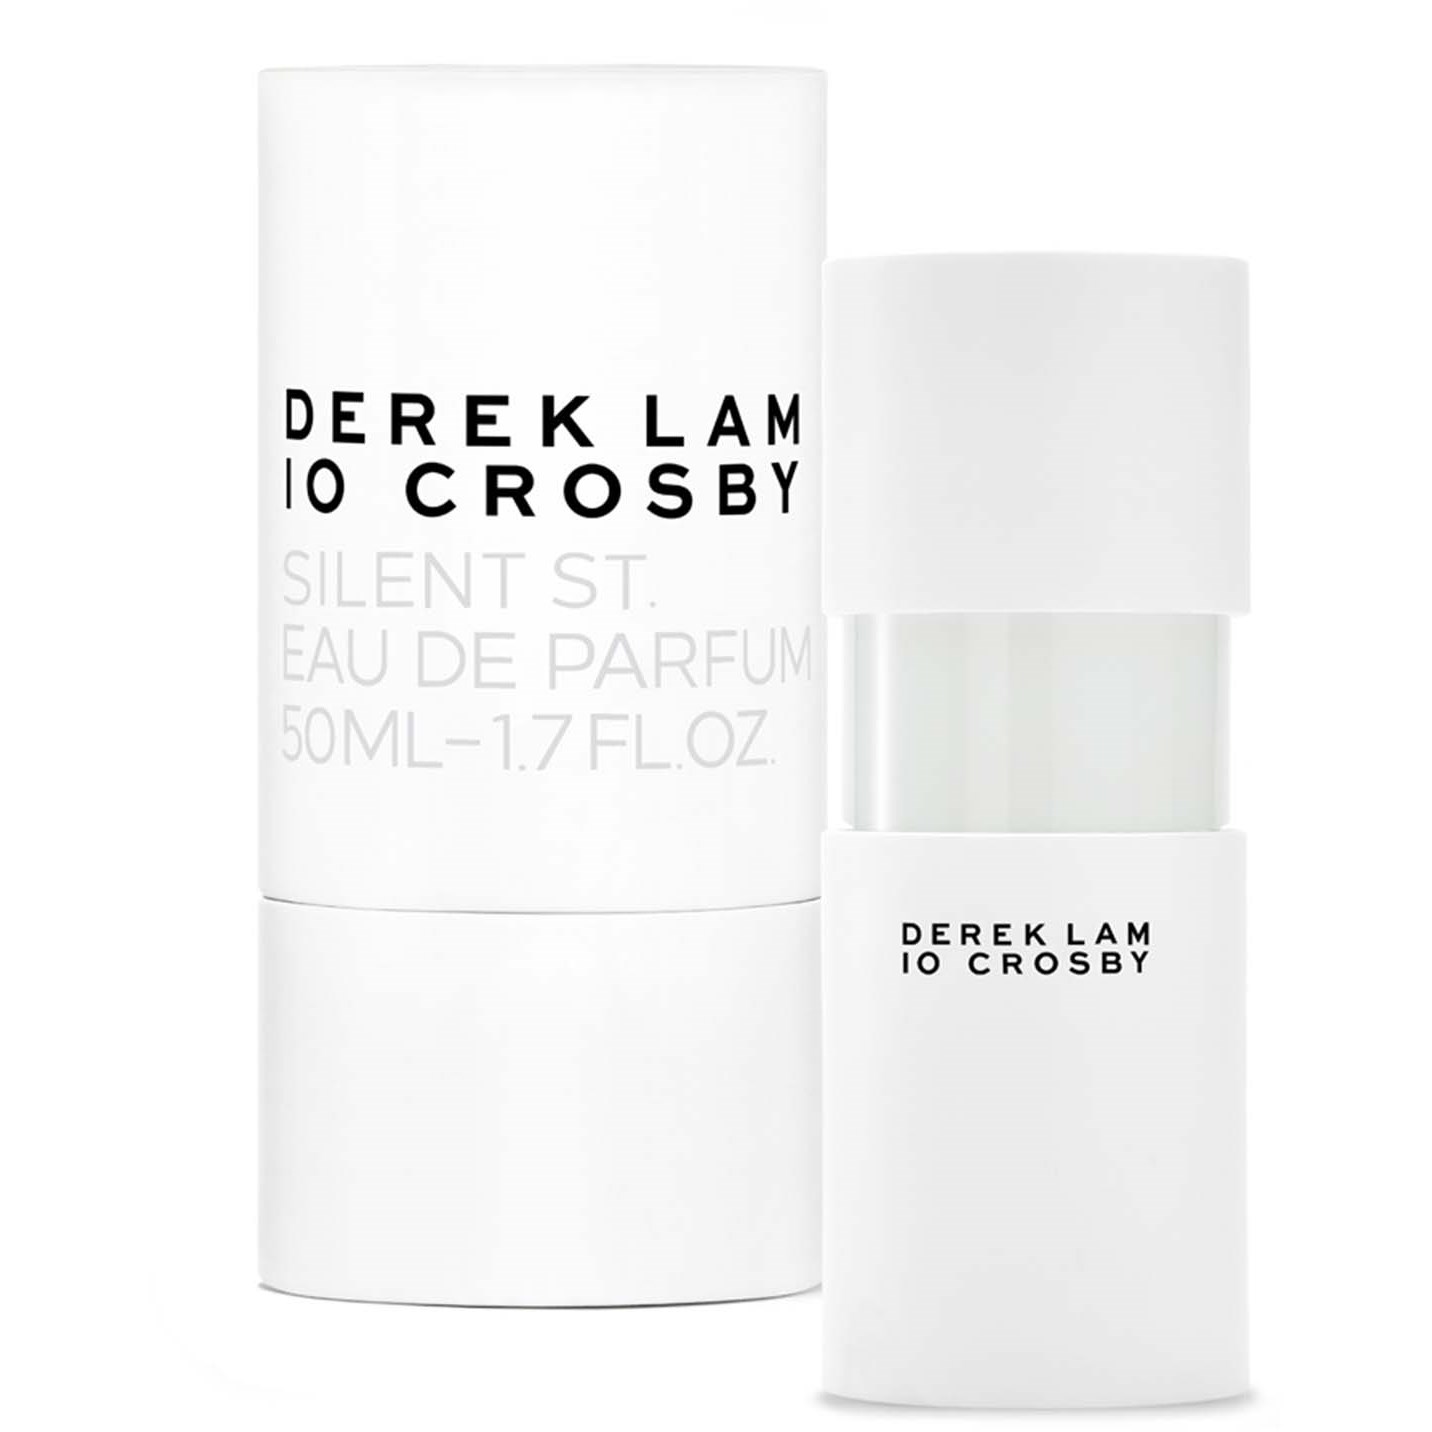 Läs mer om Derek Lam 10 Crosby Silent St Eau de Parfum 50 ml